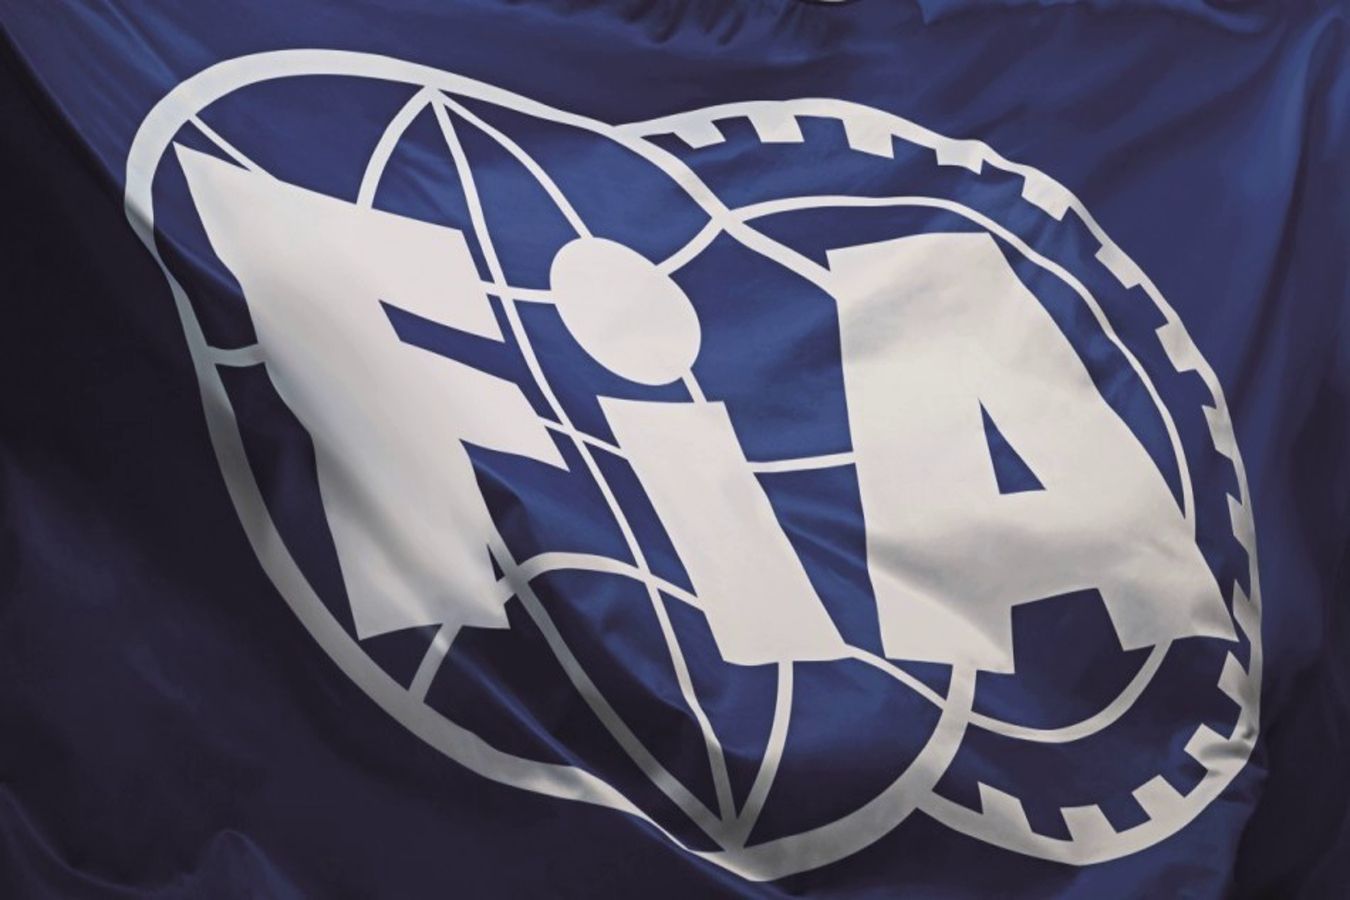 ФИА наложила временные рамки на переход высших чиновников в команды Формулы-1